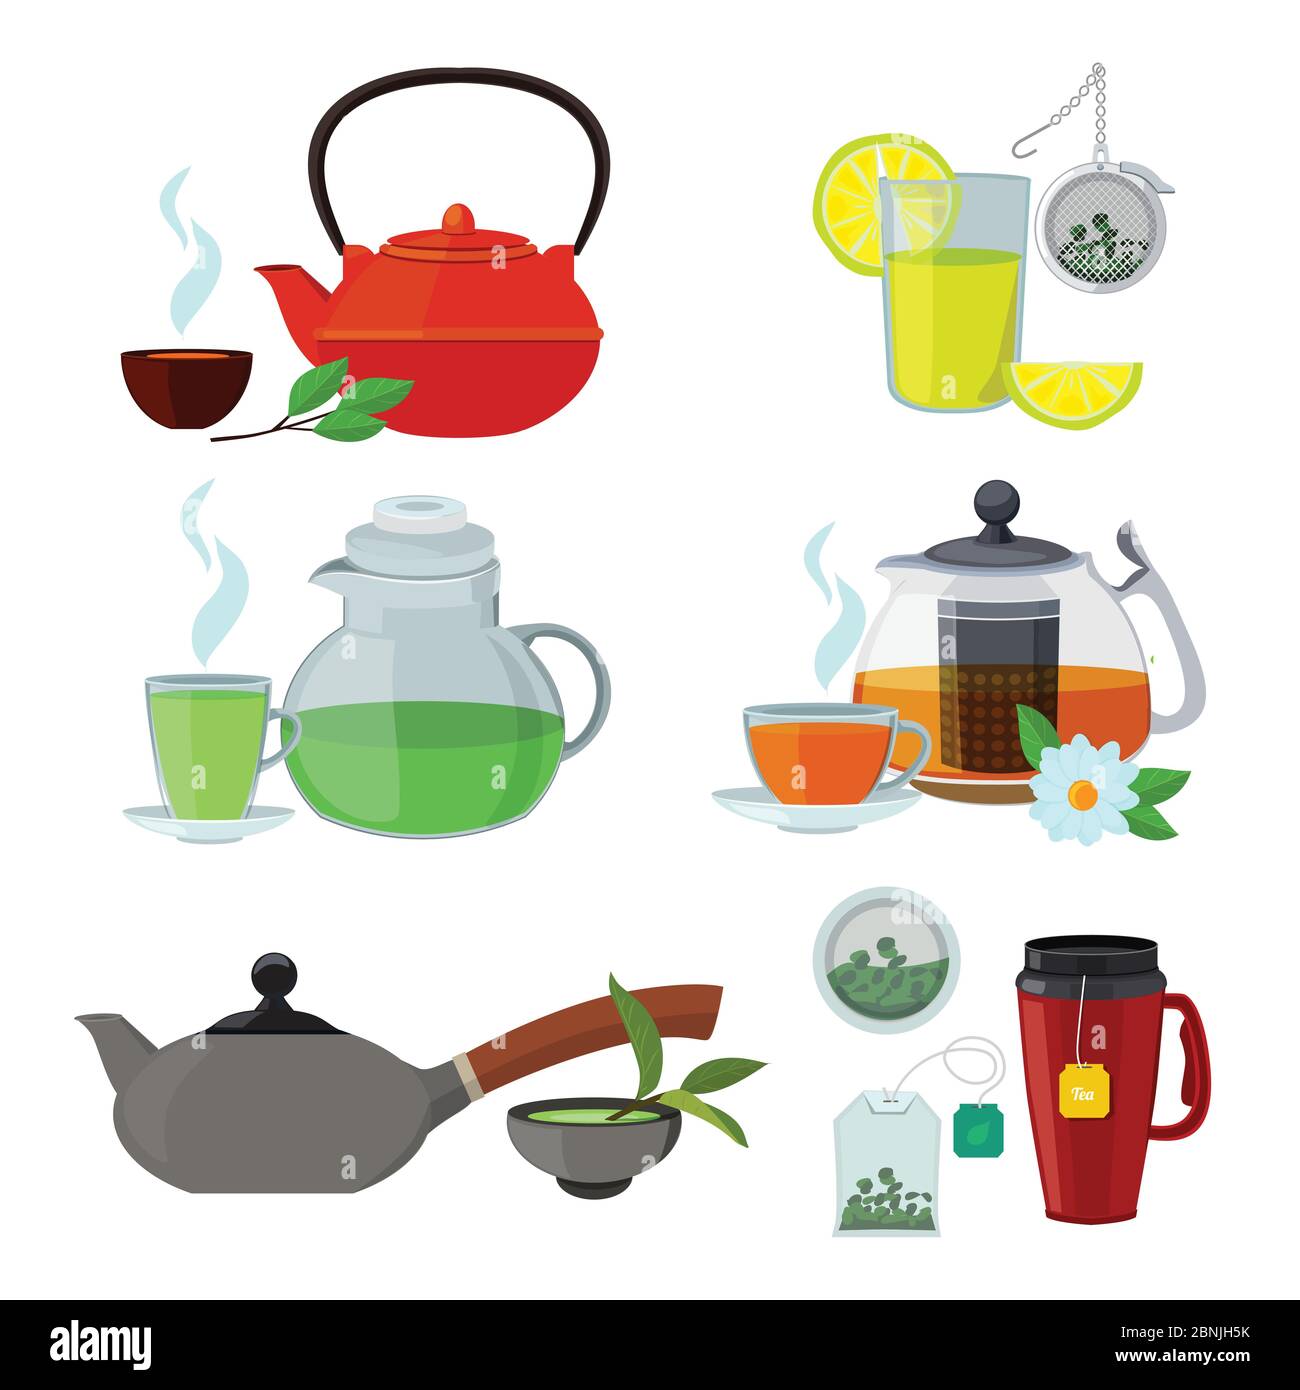 Illustrationen von Tassen und Wasserkocher für verschiedene Teesorten Stock Vektor